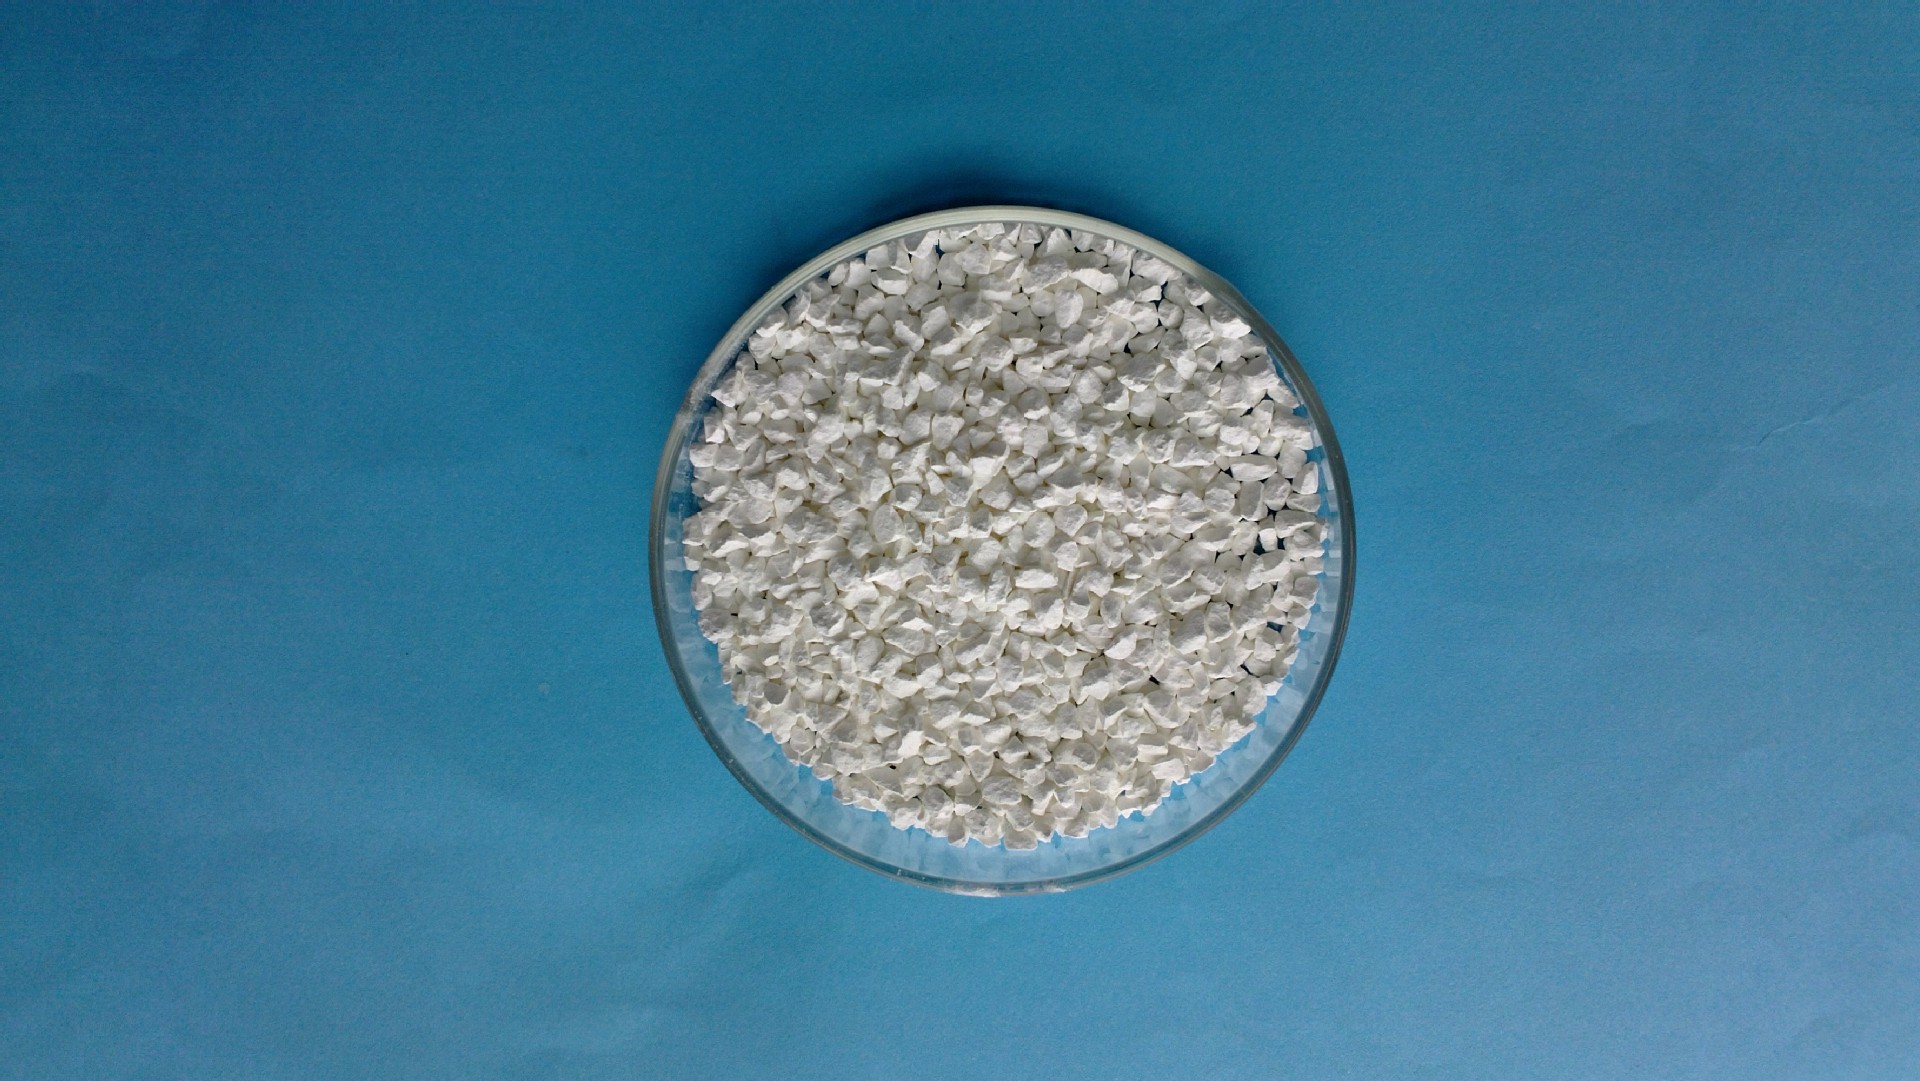 硫化锌 zns 圆片 真空镀膜材料 光学镀膜材料